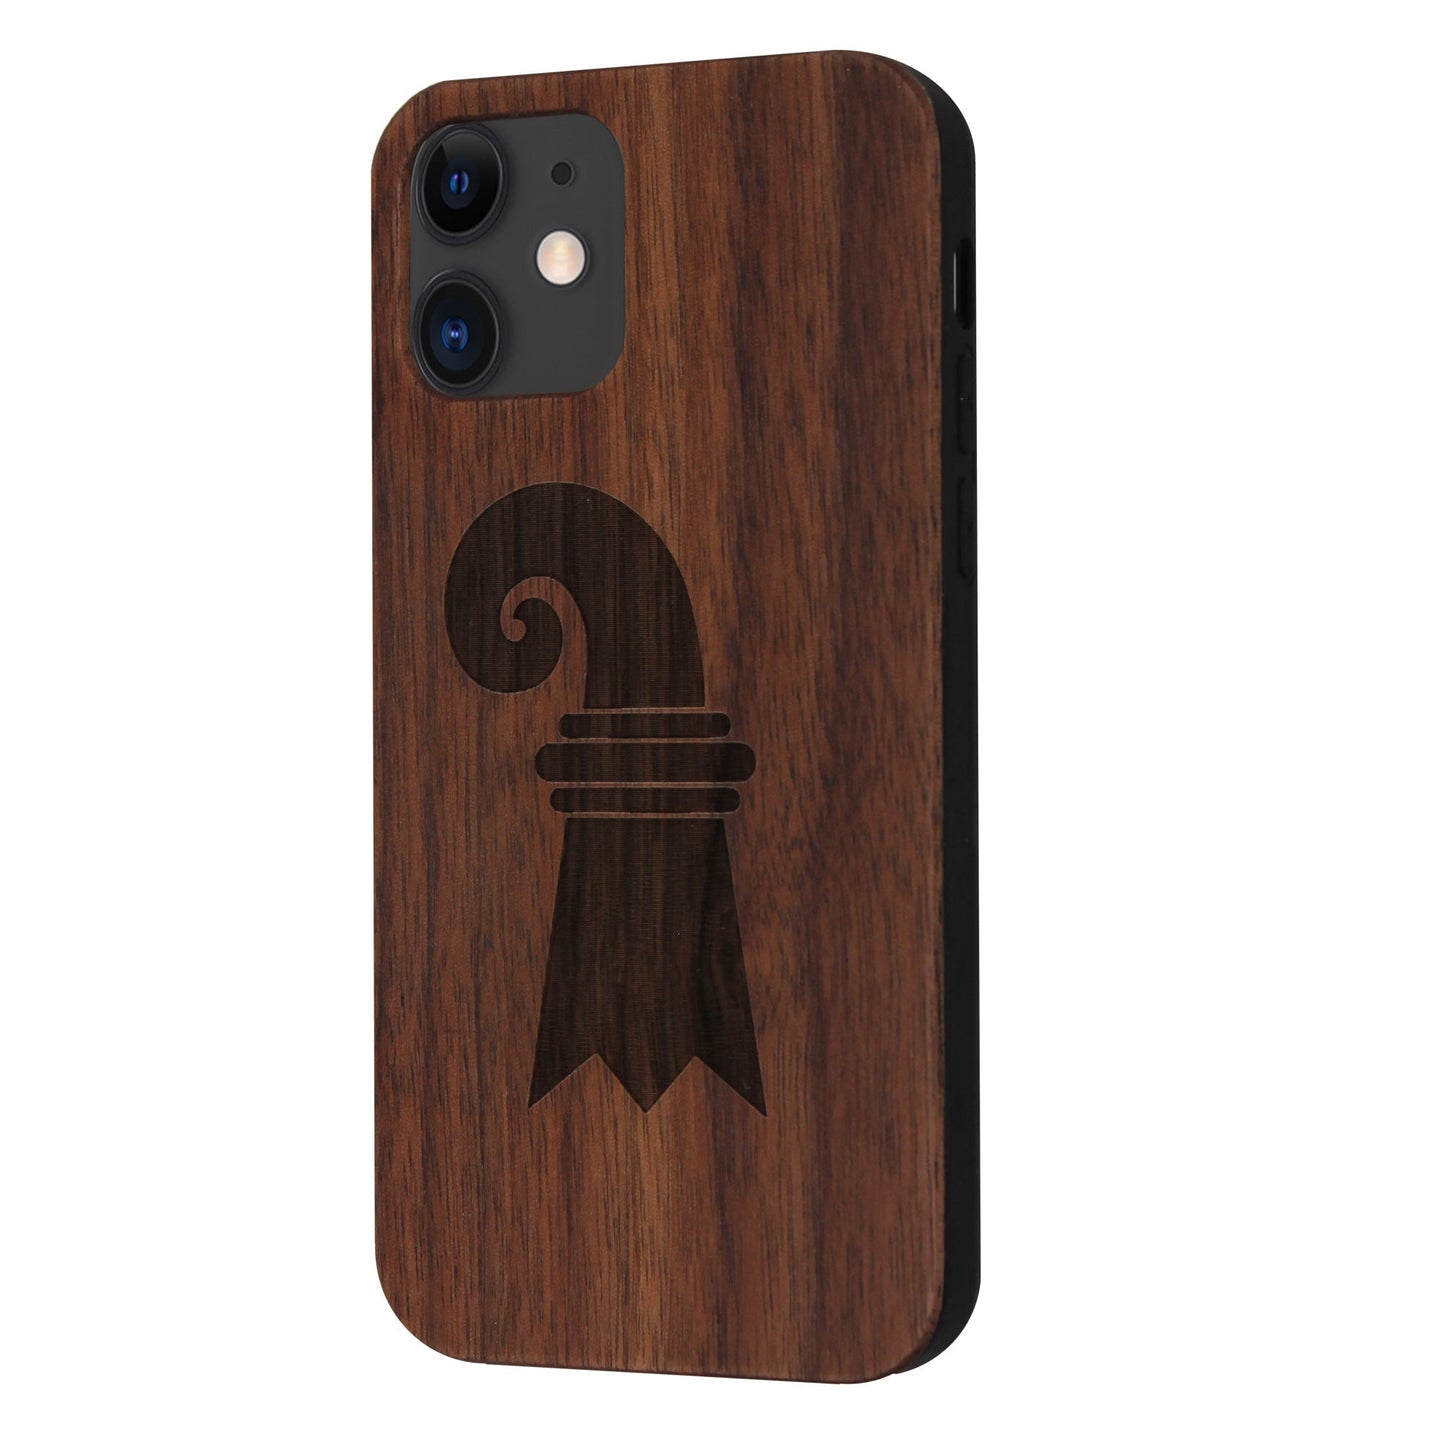 Baslerstab Eden case made of walnut wood for iPhone 11